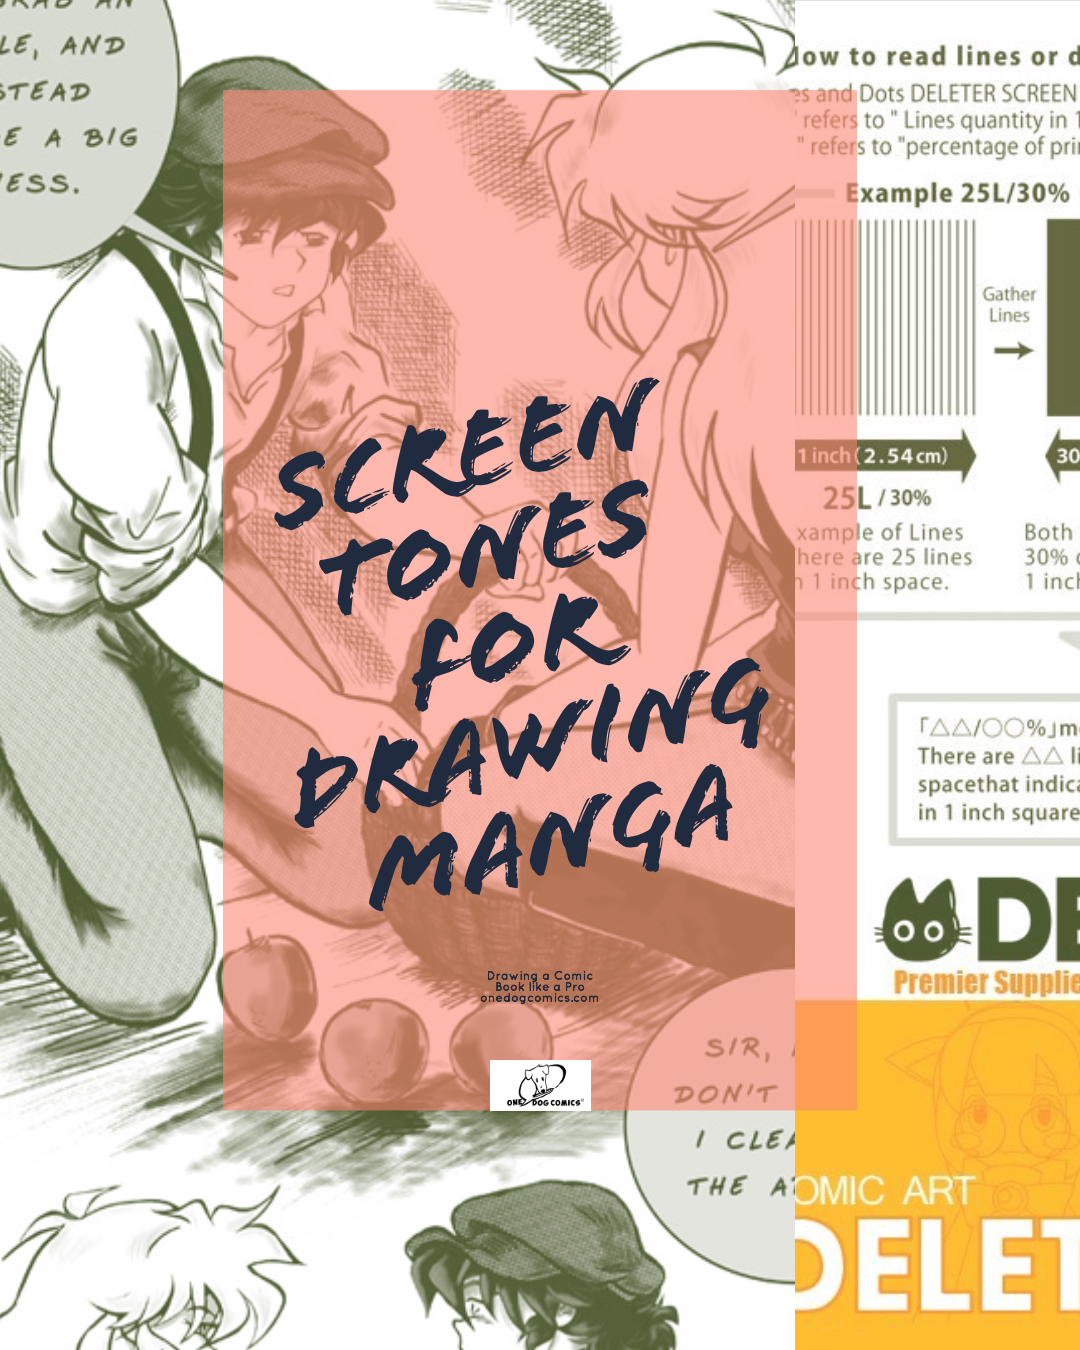 Blog post screen tones for drawing manga